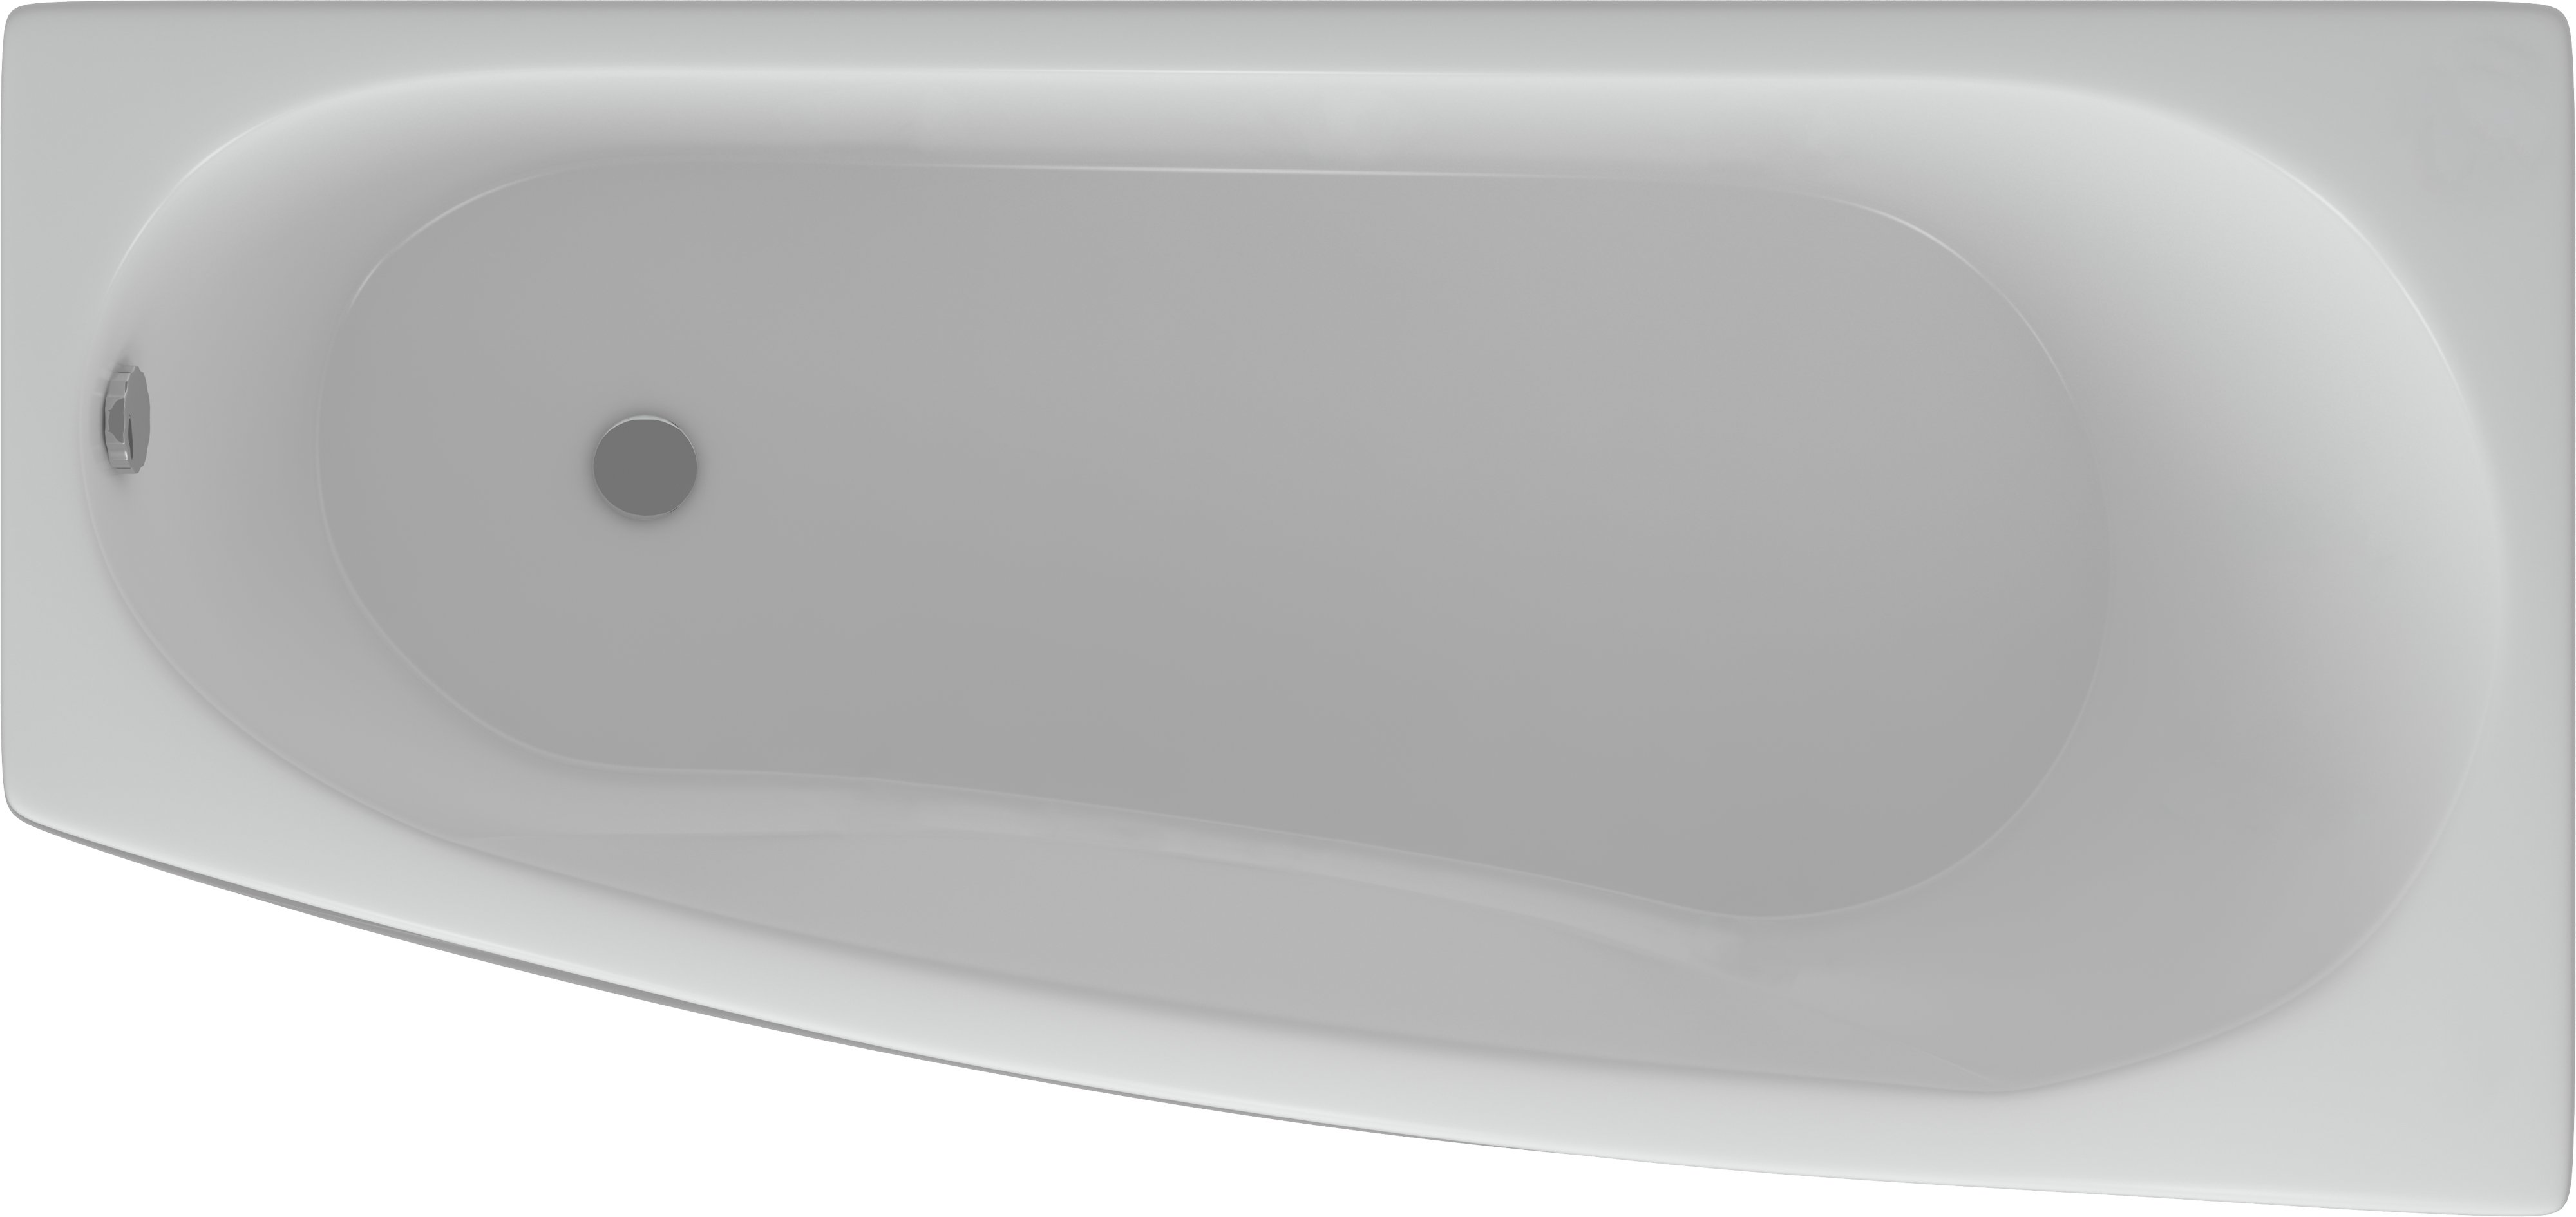 Акриловая ванна Акватек Пандора R, с фронтальным экраном PAN160-0000039 - 0